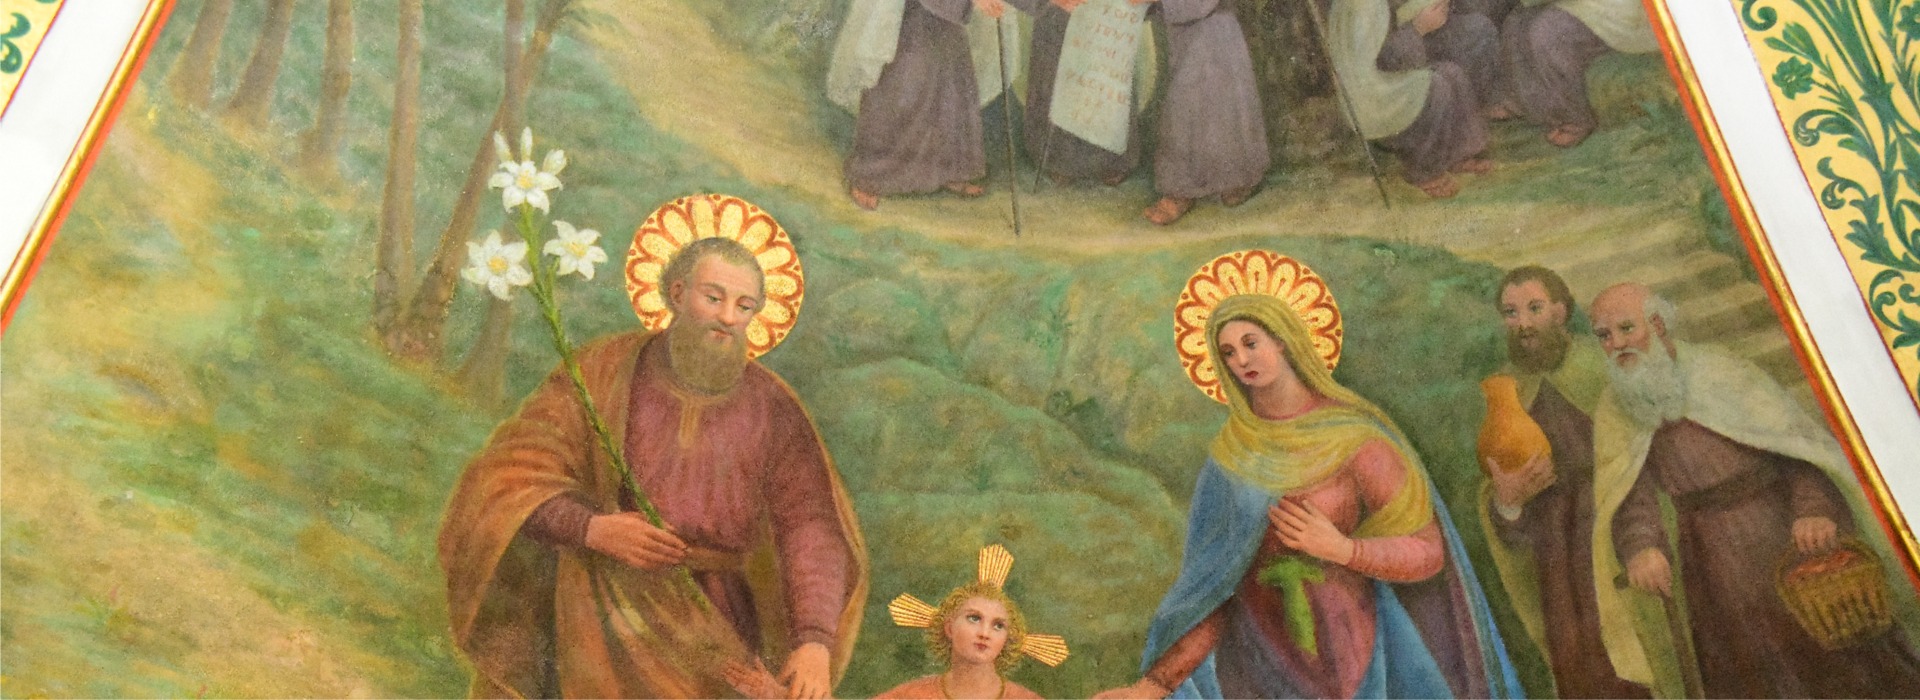 ترميم الرسومات في كنيسة مار الياس ستيلا ماريس